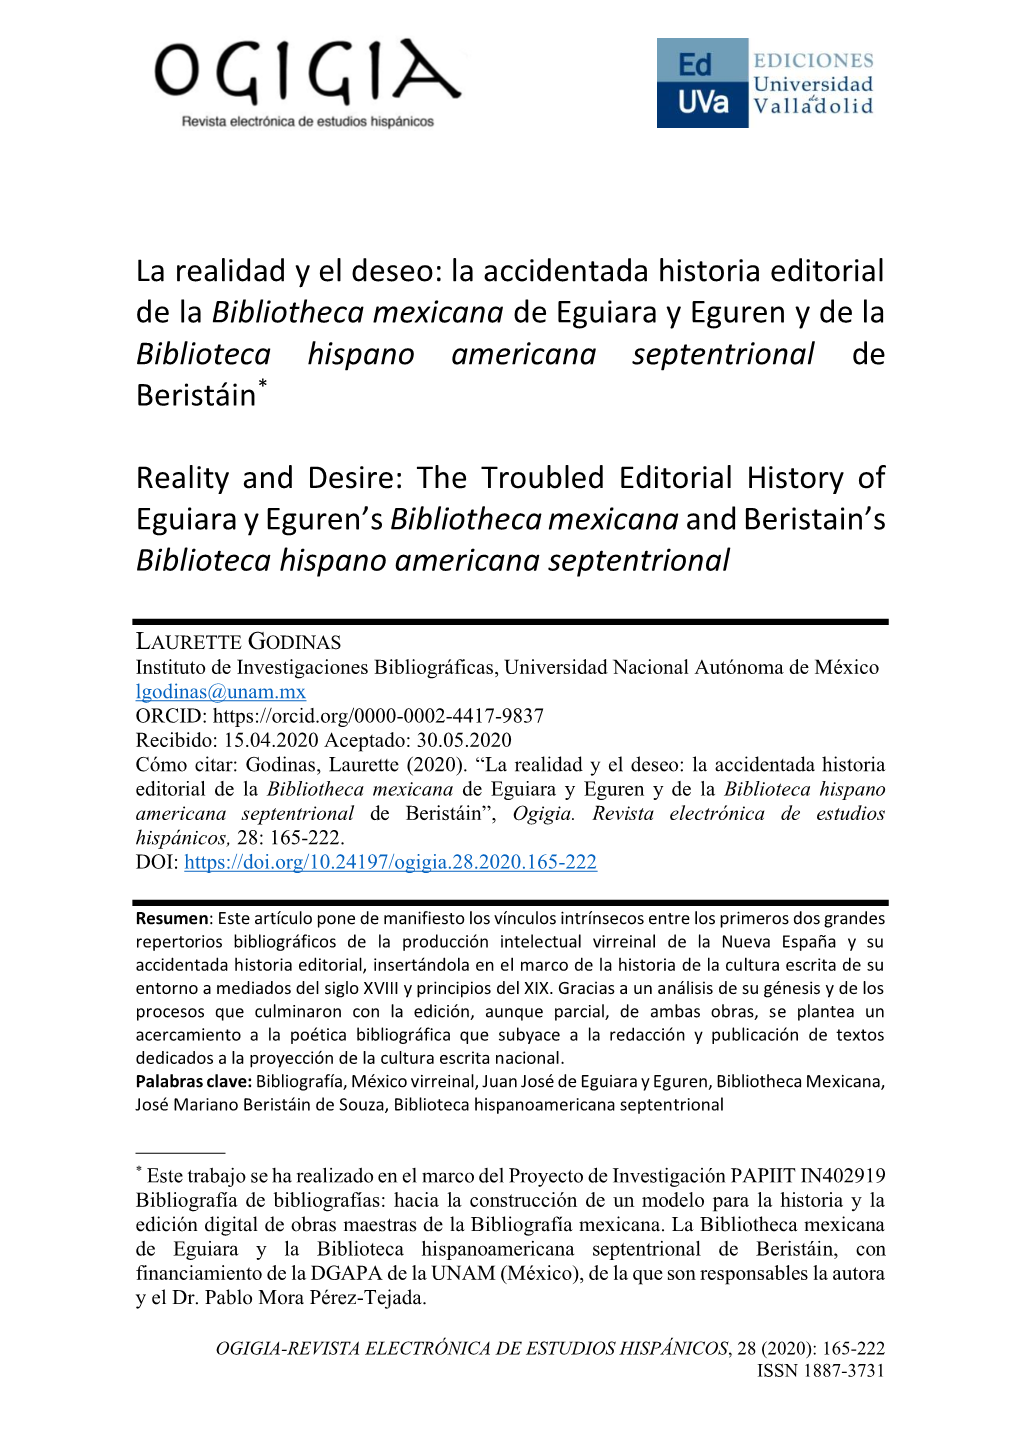 La Realidad Y El Deseo: La Accidentada Historia Editorial De La Bibliotheca Mexicana De Eguiara Y Eguren Y De La Biblioteca Hisp